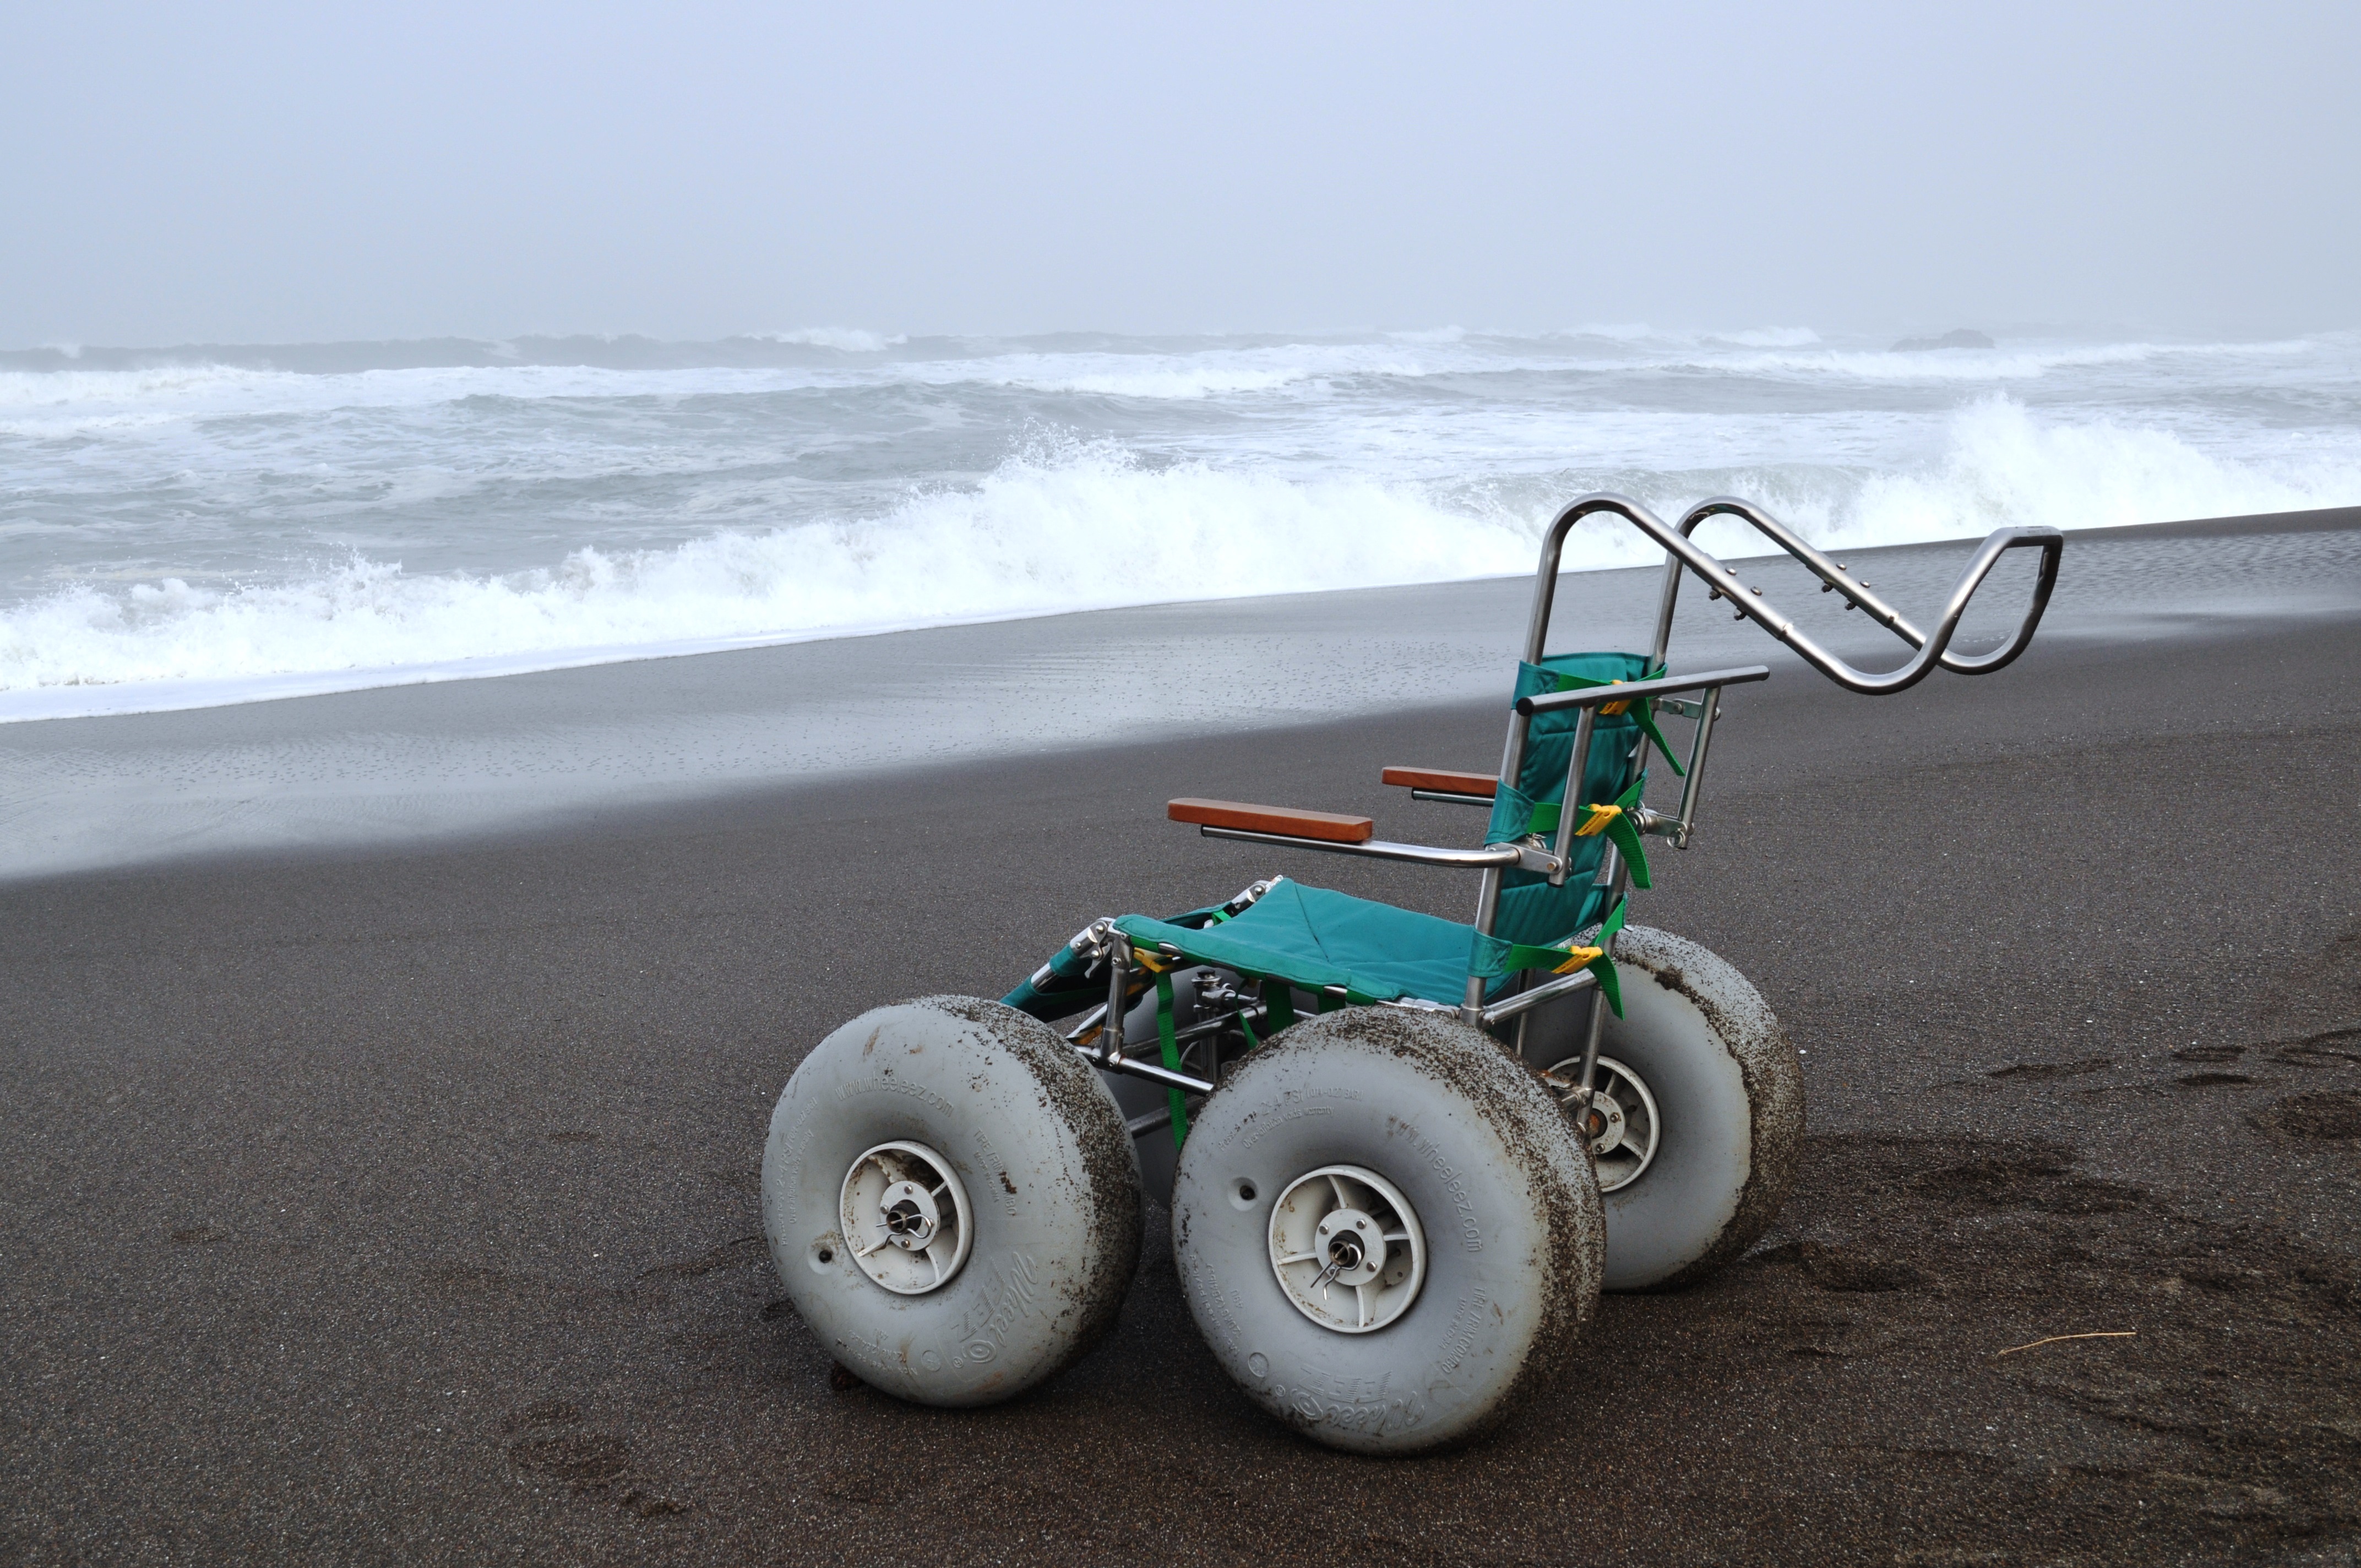 Beach Wheelchair Image